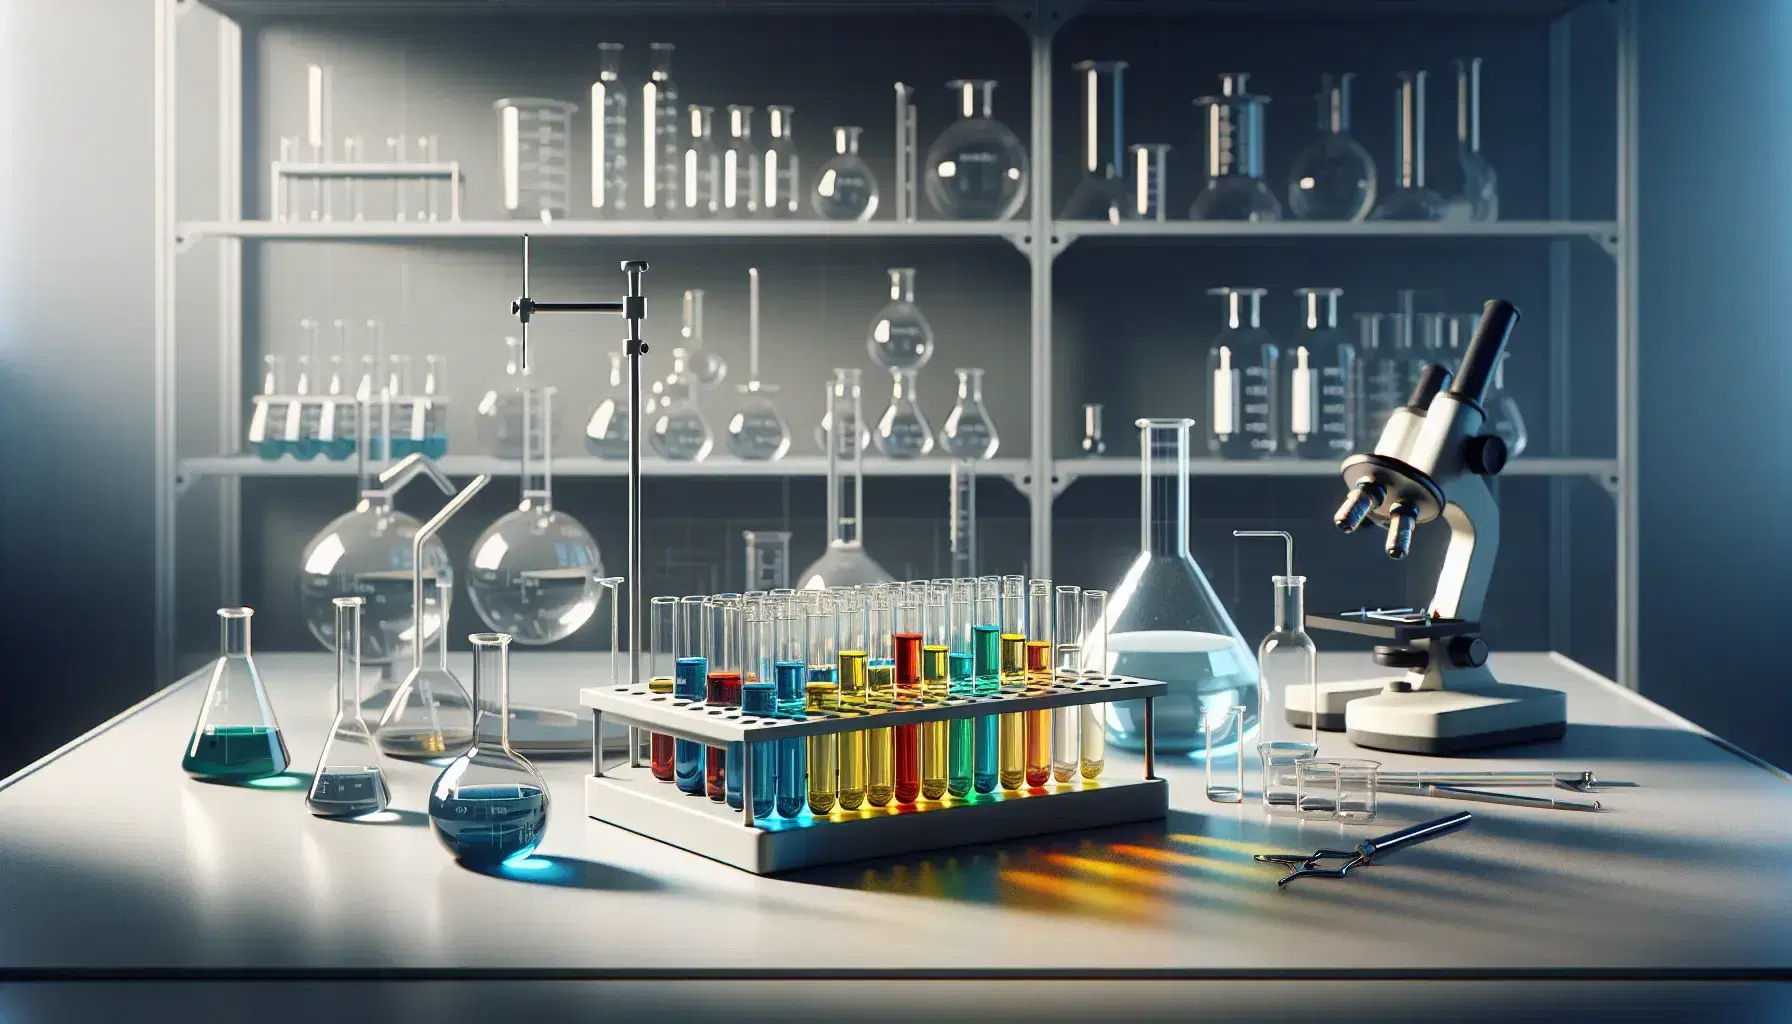 Laboratorio de química con tubos de ensayo de colores en soporte metálico, matraz Erlenmeyer y mechero Bunsen encendido, junto a microscopio y estantería con utensilios.